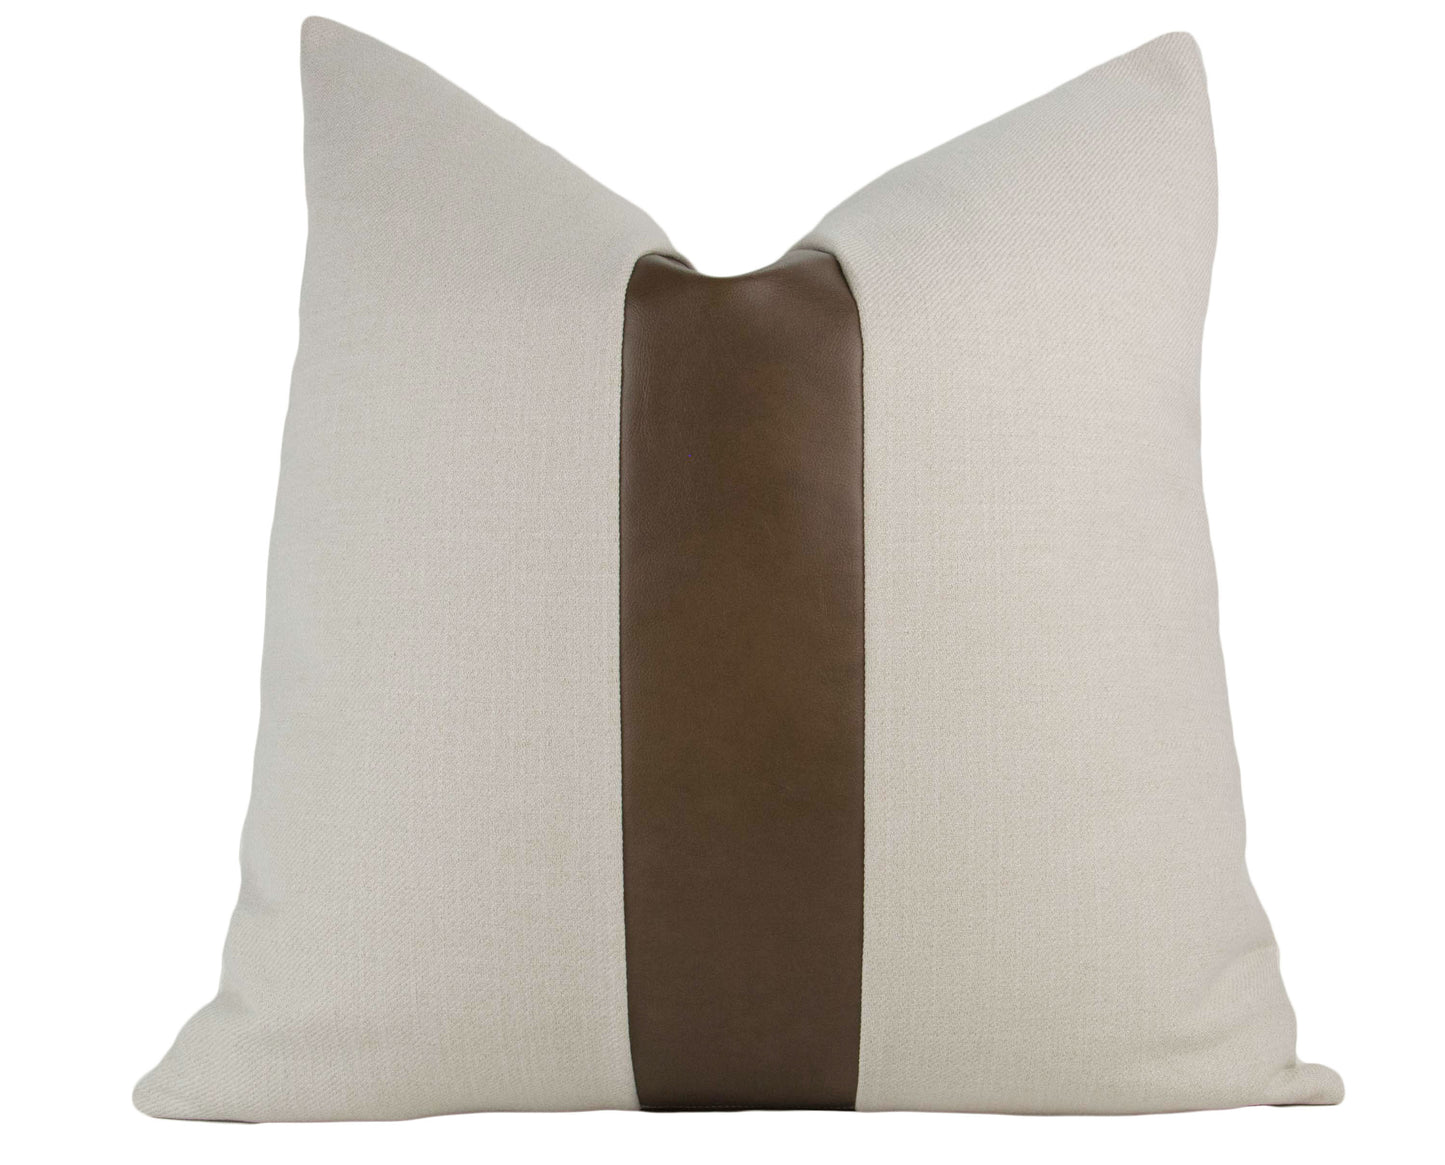 Faux Vegan Leather & Beige Color Block Stripe Pillow Cover, 20x20"